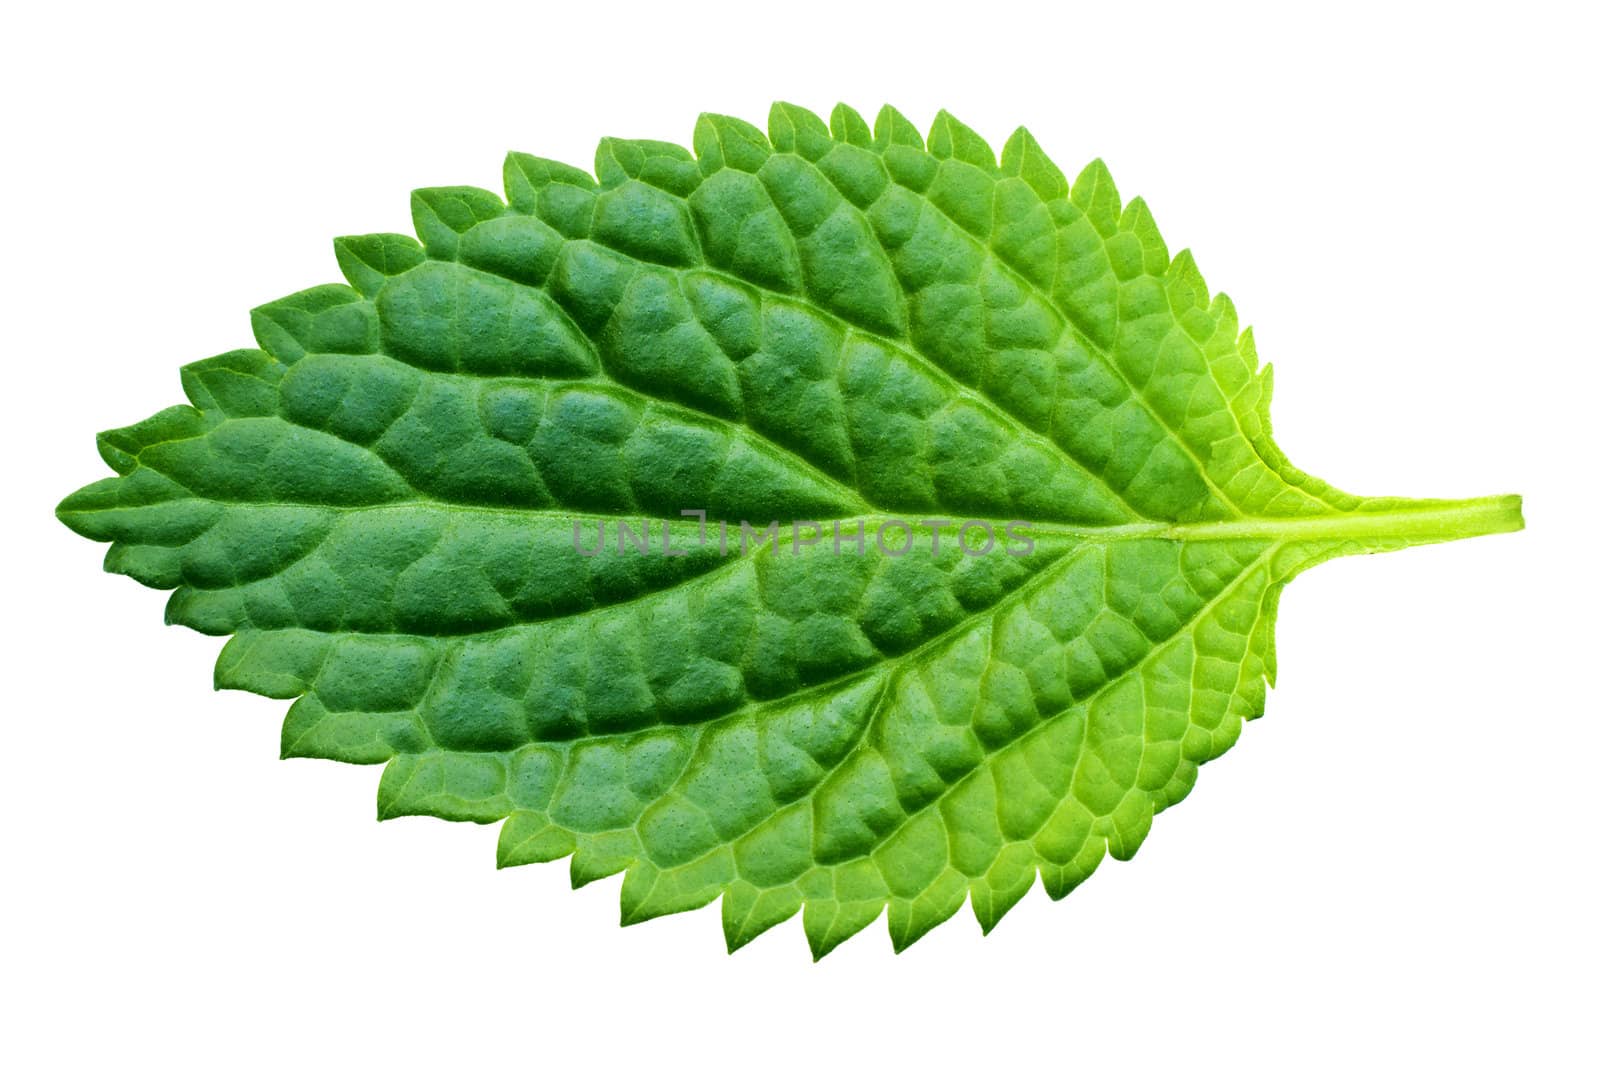 A beautiful lush green leaf by Jaykayl